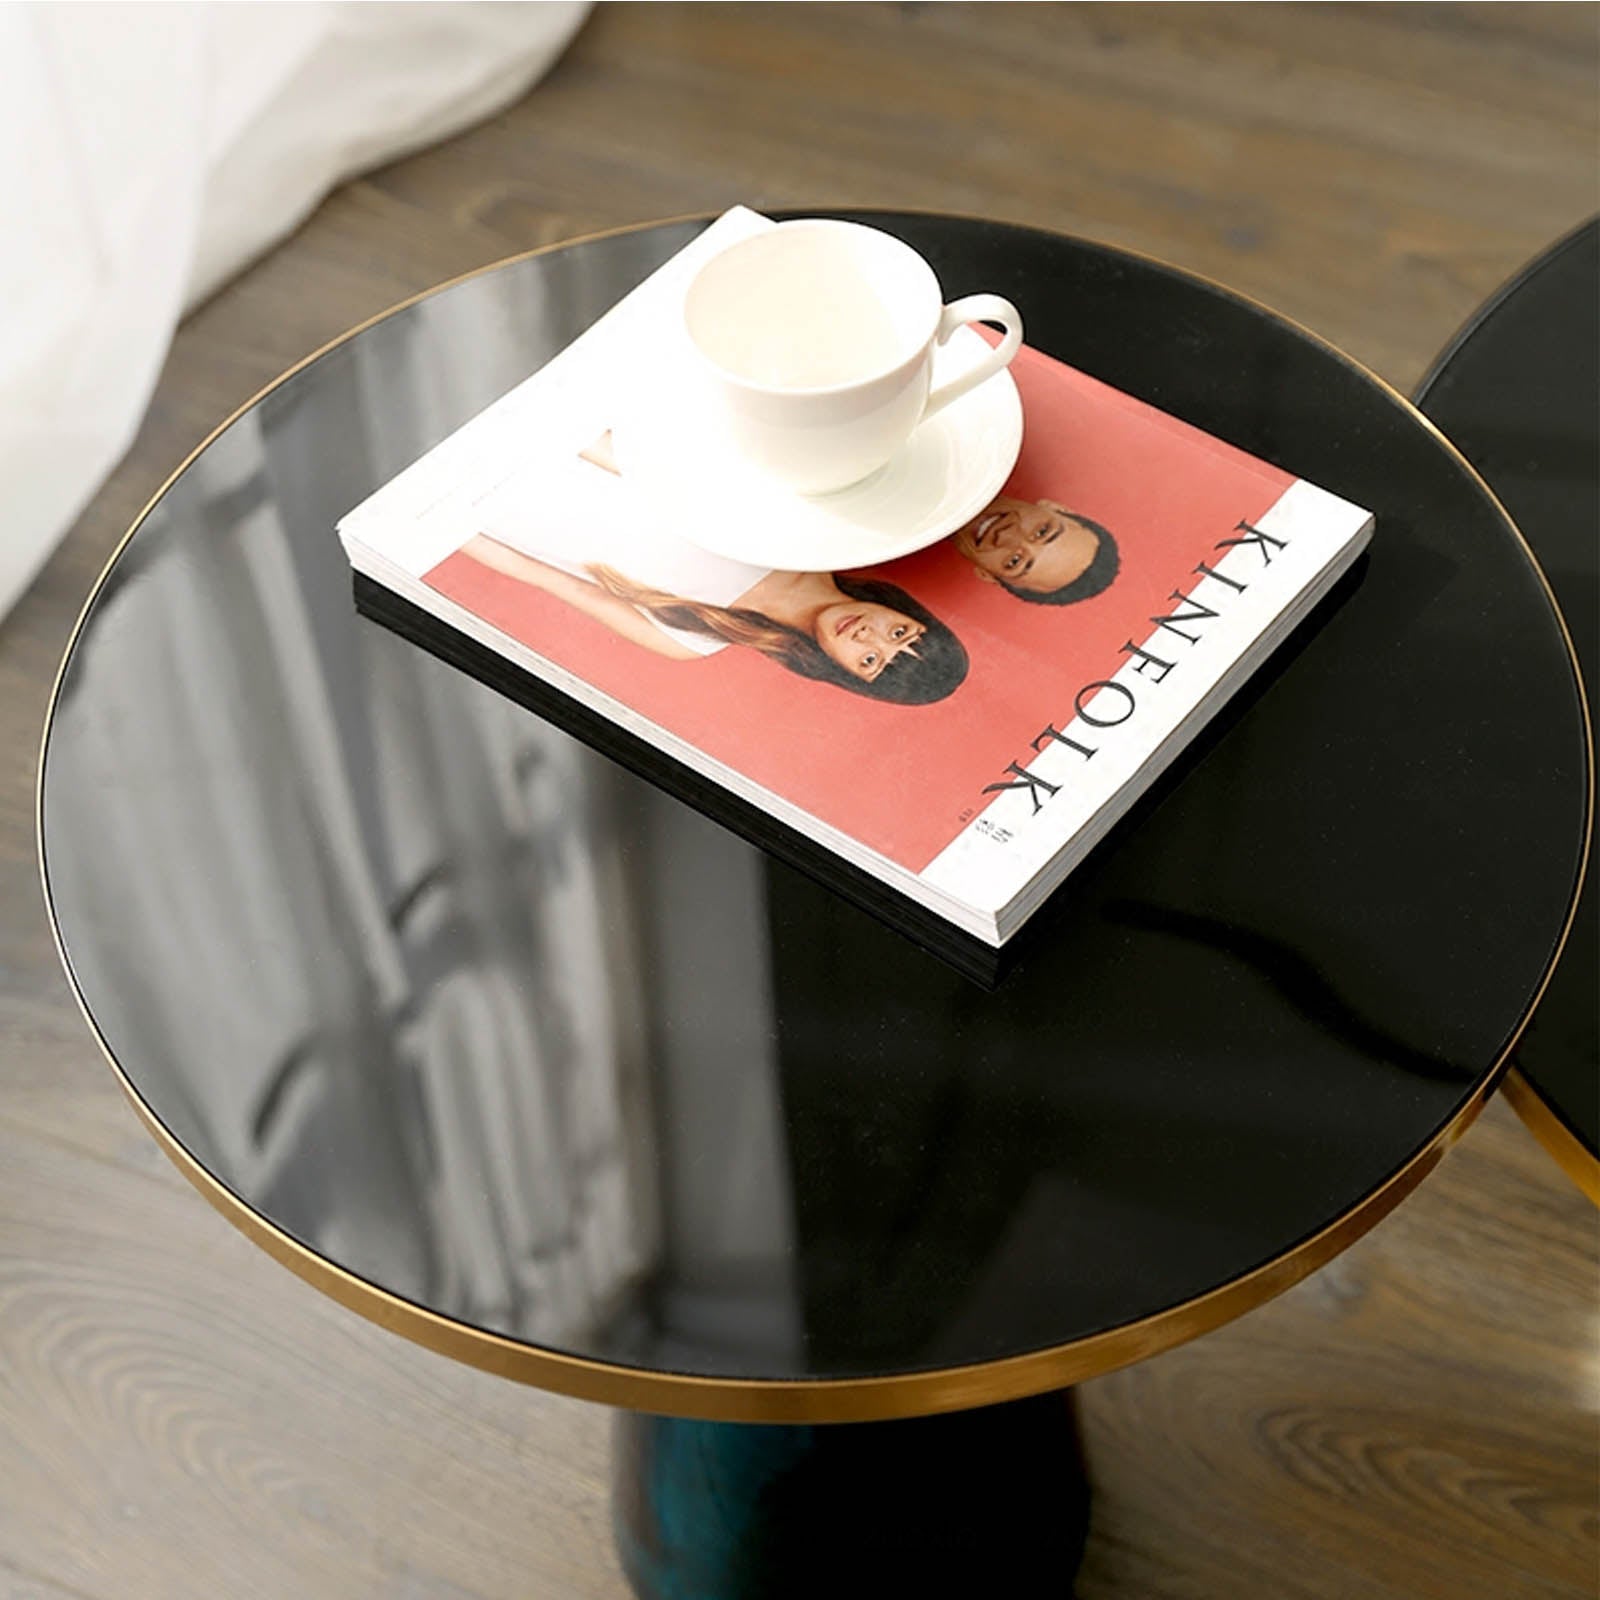 Latina Coffee Table Tg-26-Y-Ct8485-75-Y -  Coffee Tables | طاولة قهوة لاتينا - ebarza Furniture UAE | Shop Modern Furniture in Abu Dhabi & Dubai - مفروشات ايبازرا في الامارات | تسوق اثاث عصري وديكورات مميزة في دبي وابوظبي